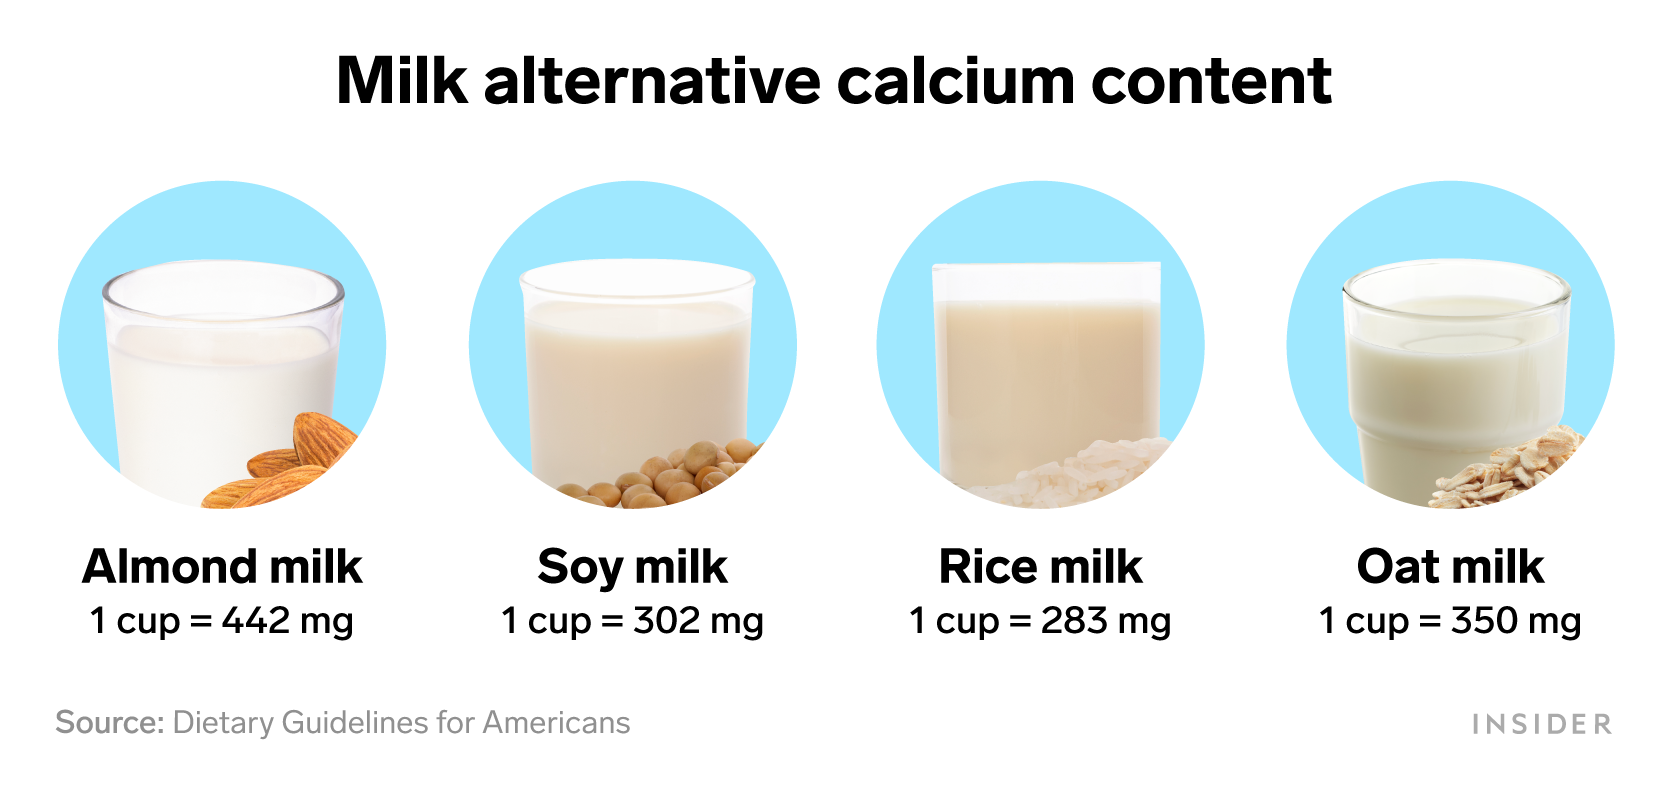 Foods that are rich in calcium: Milk alternative calcium content